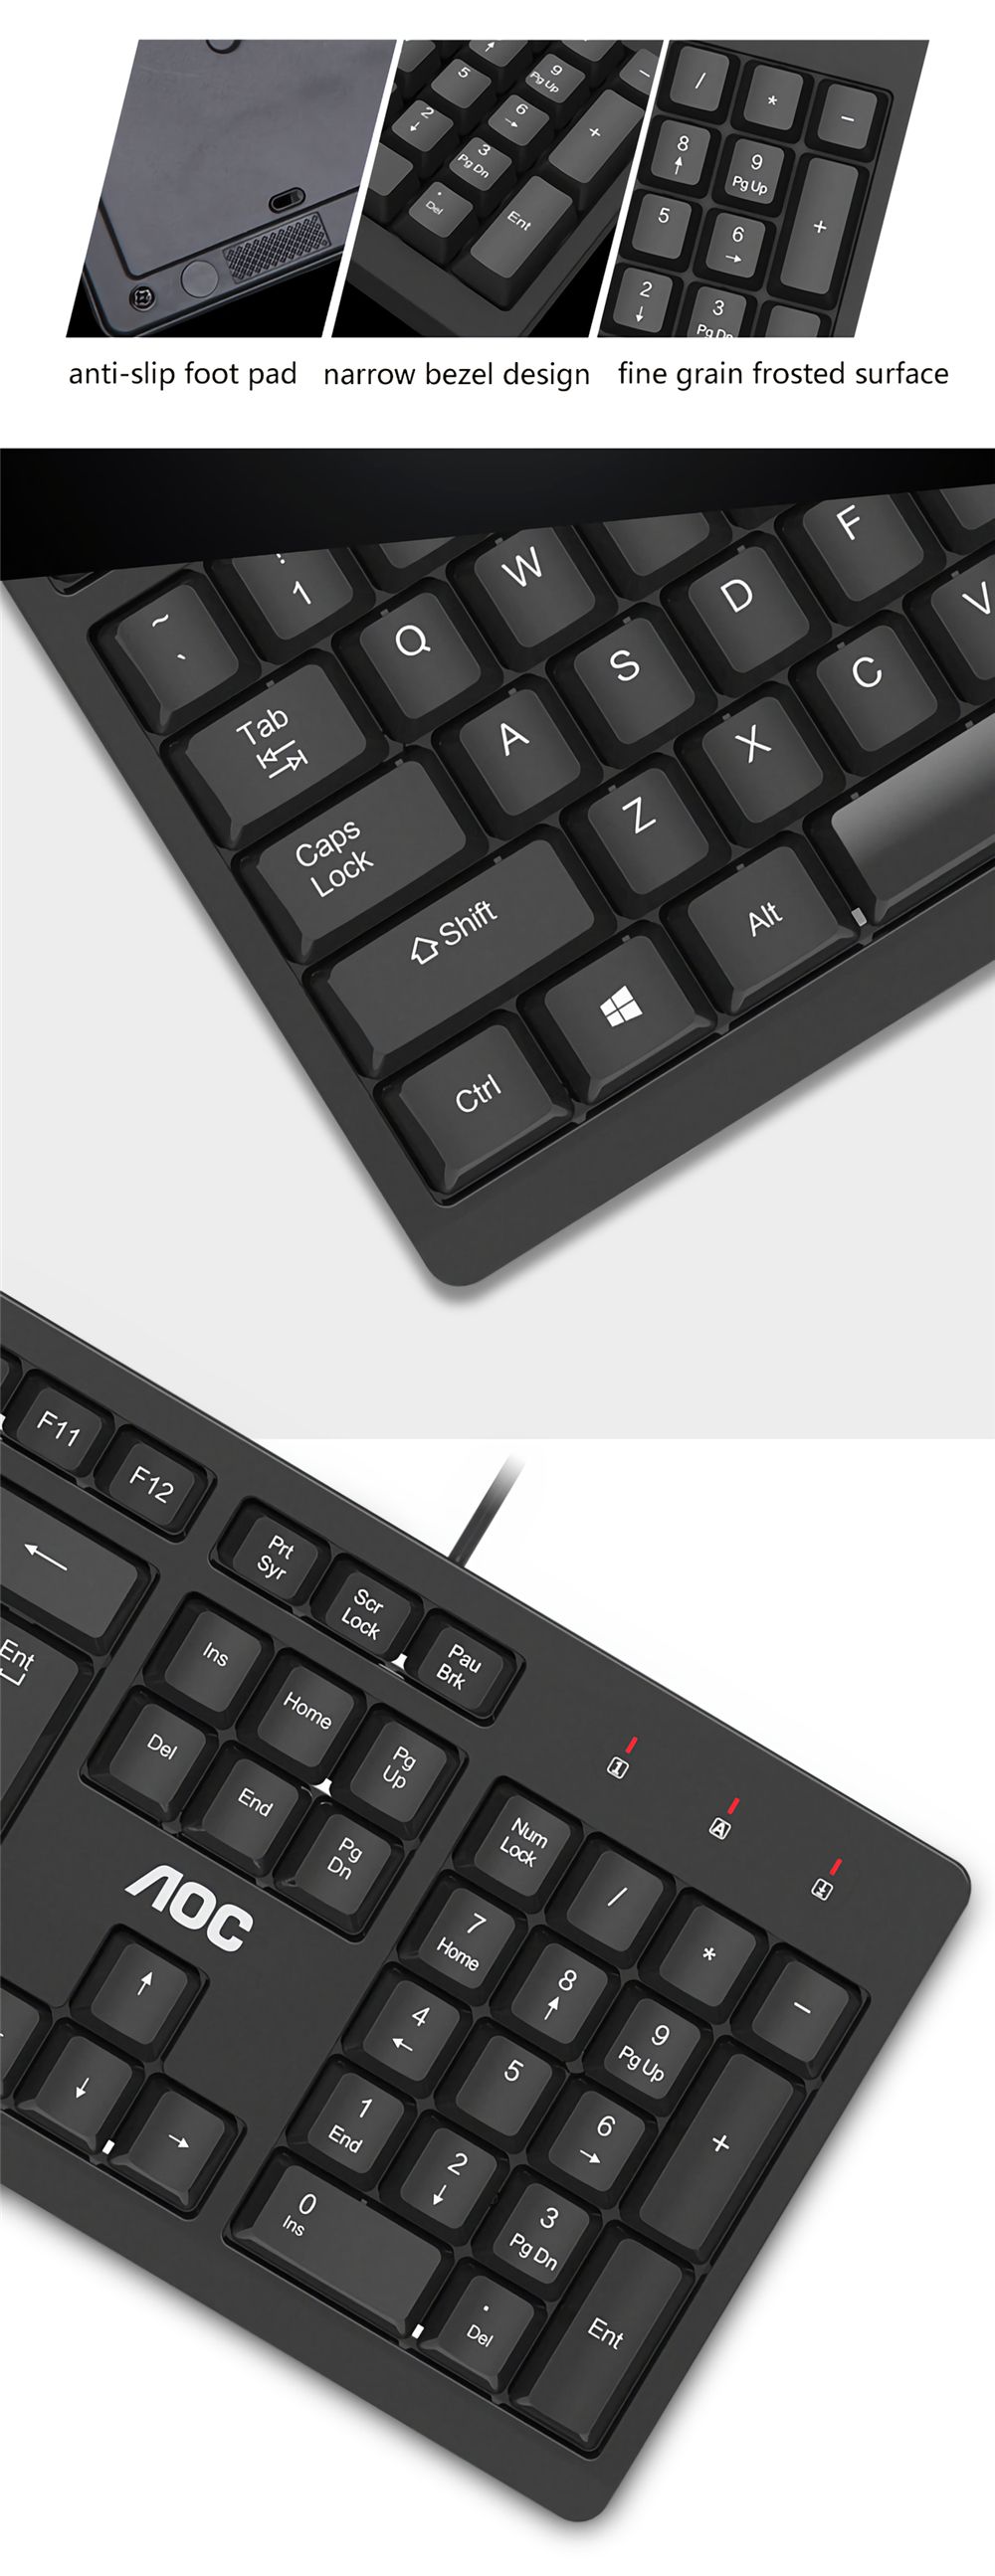 AOC-KB161-Wired-Keyboard-104-Keys-Waterproof-Business-Office-Keyboard-for-Computer-PC-Laptop-1731339